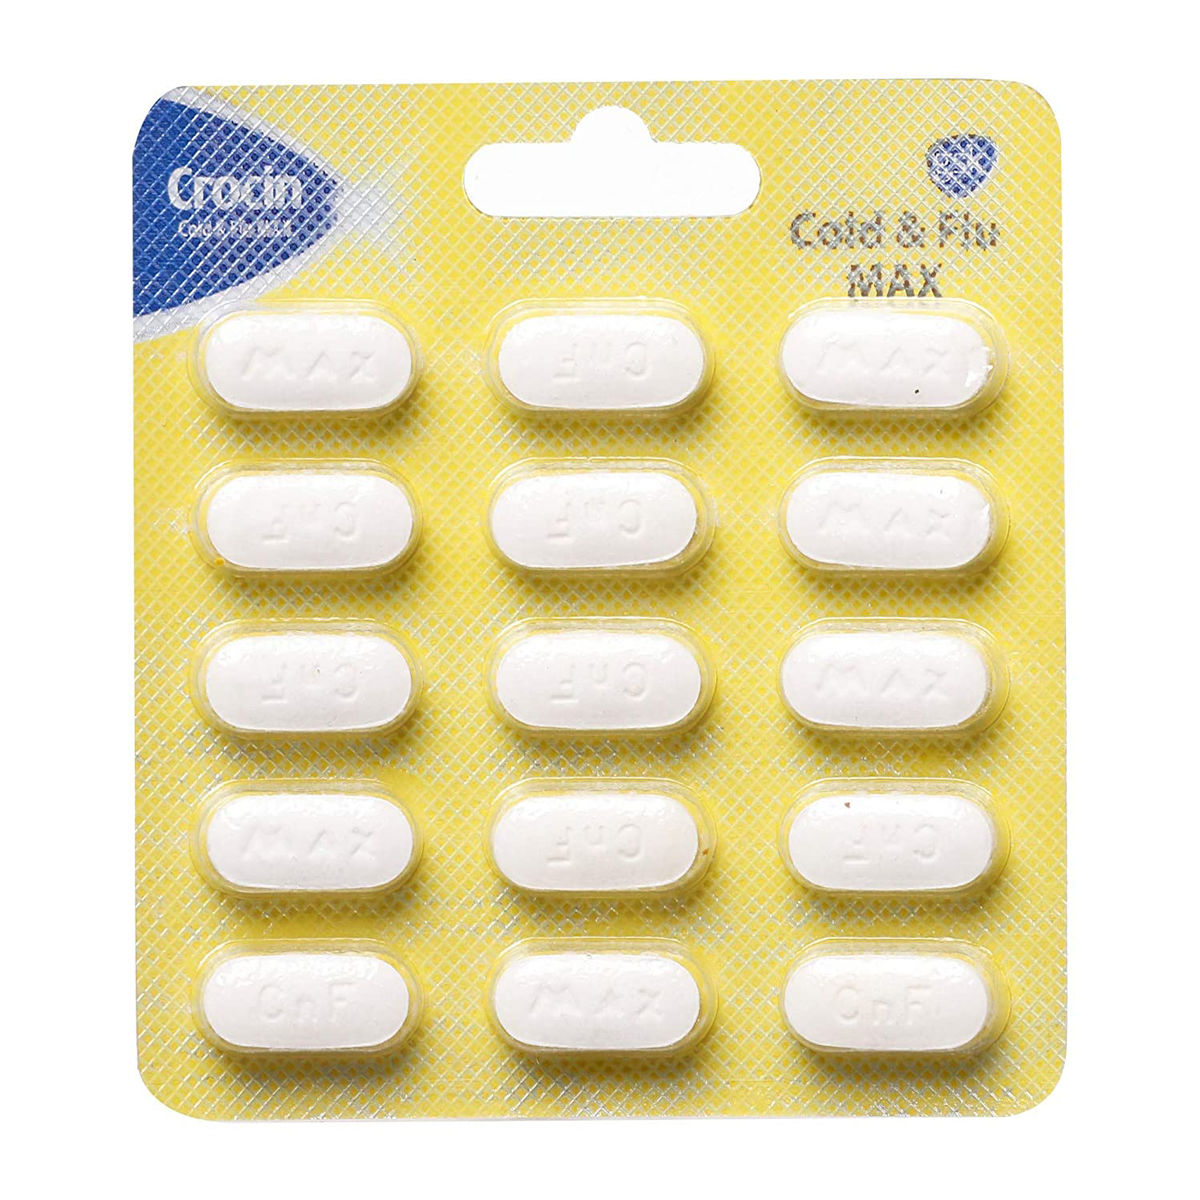 Crocin Cold & Flu Max Tablet 15's, Pack of 15 TABLETS